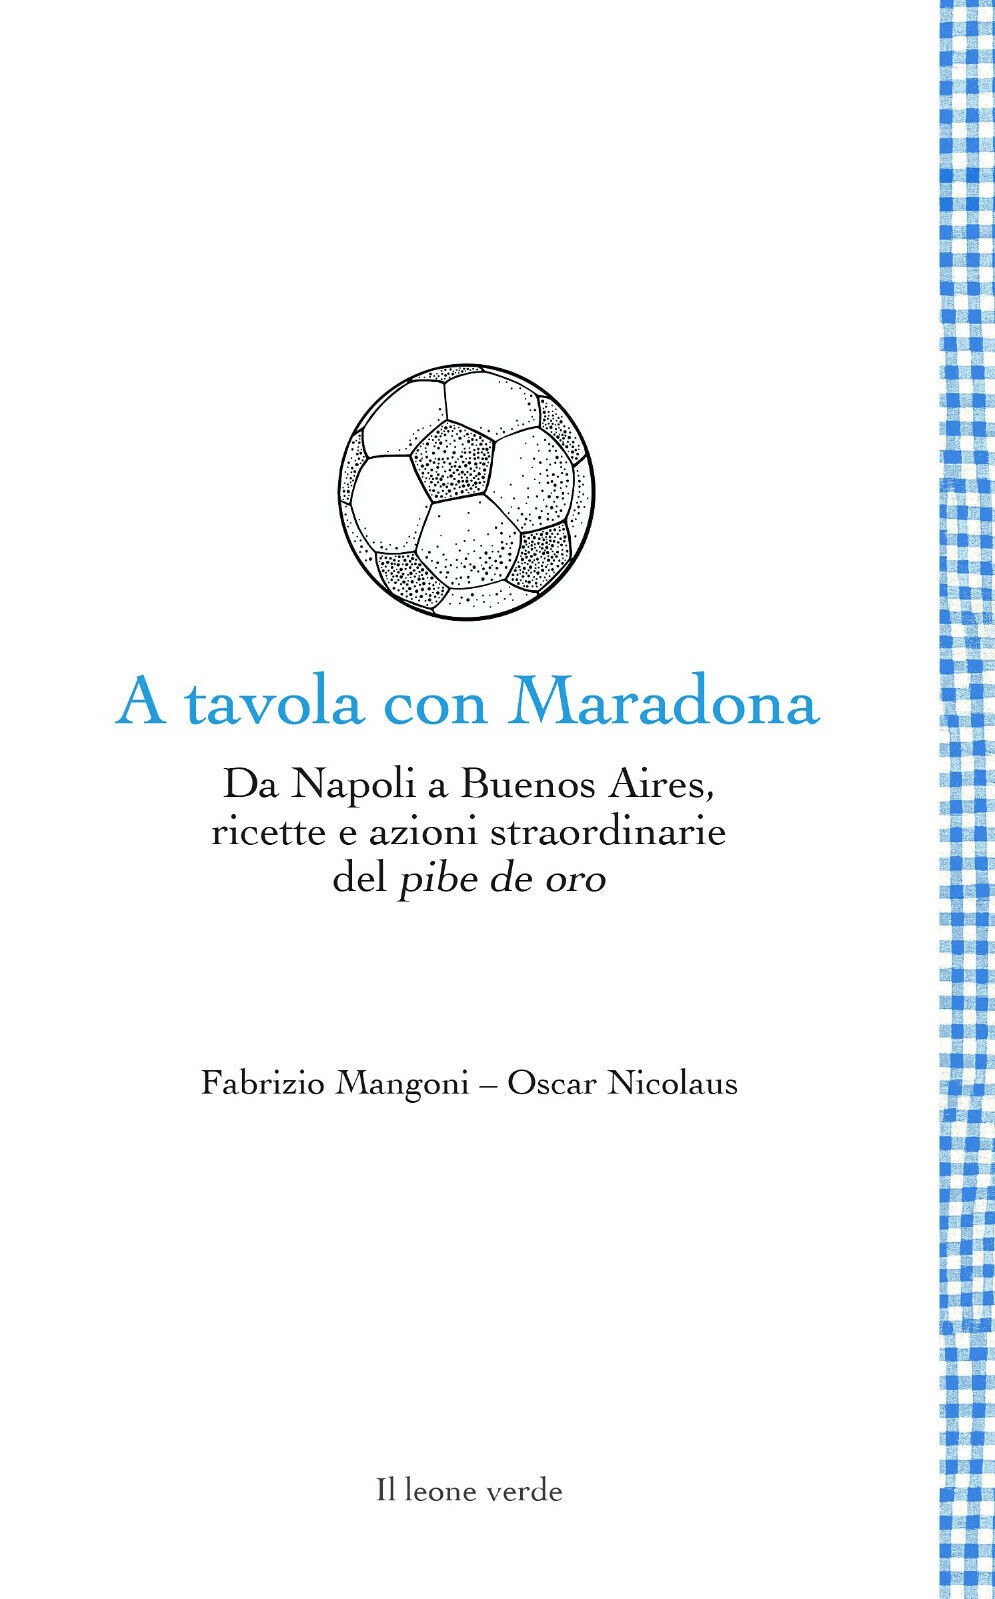 A tavola con Maradona - Fabrizio Mangoni, Oscar Nicolaus - Il Leone Verde- 2021  libro usato